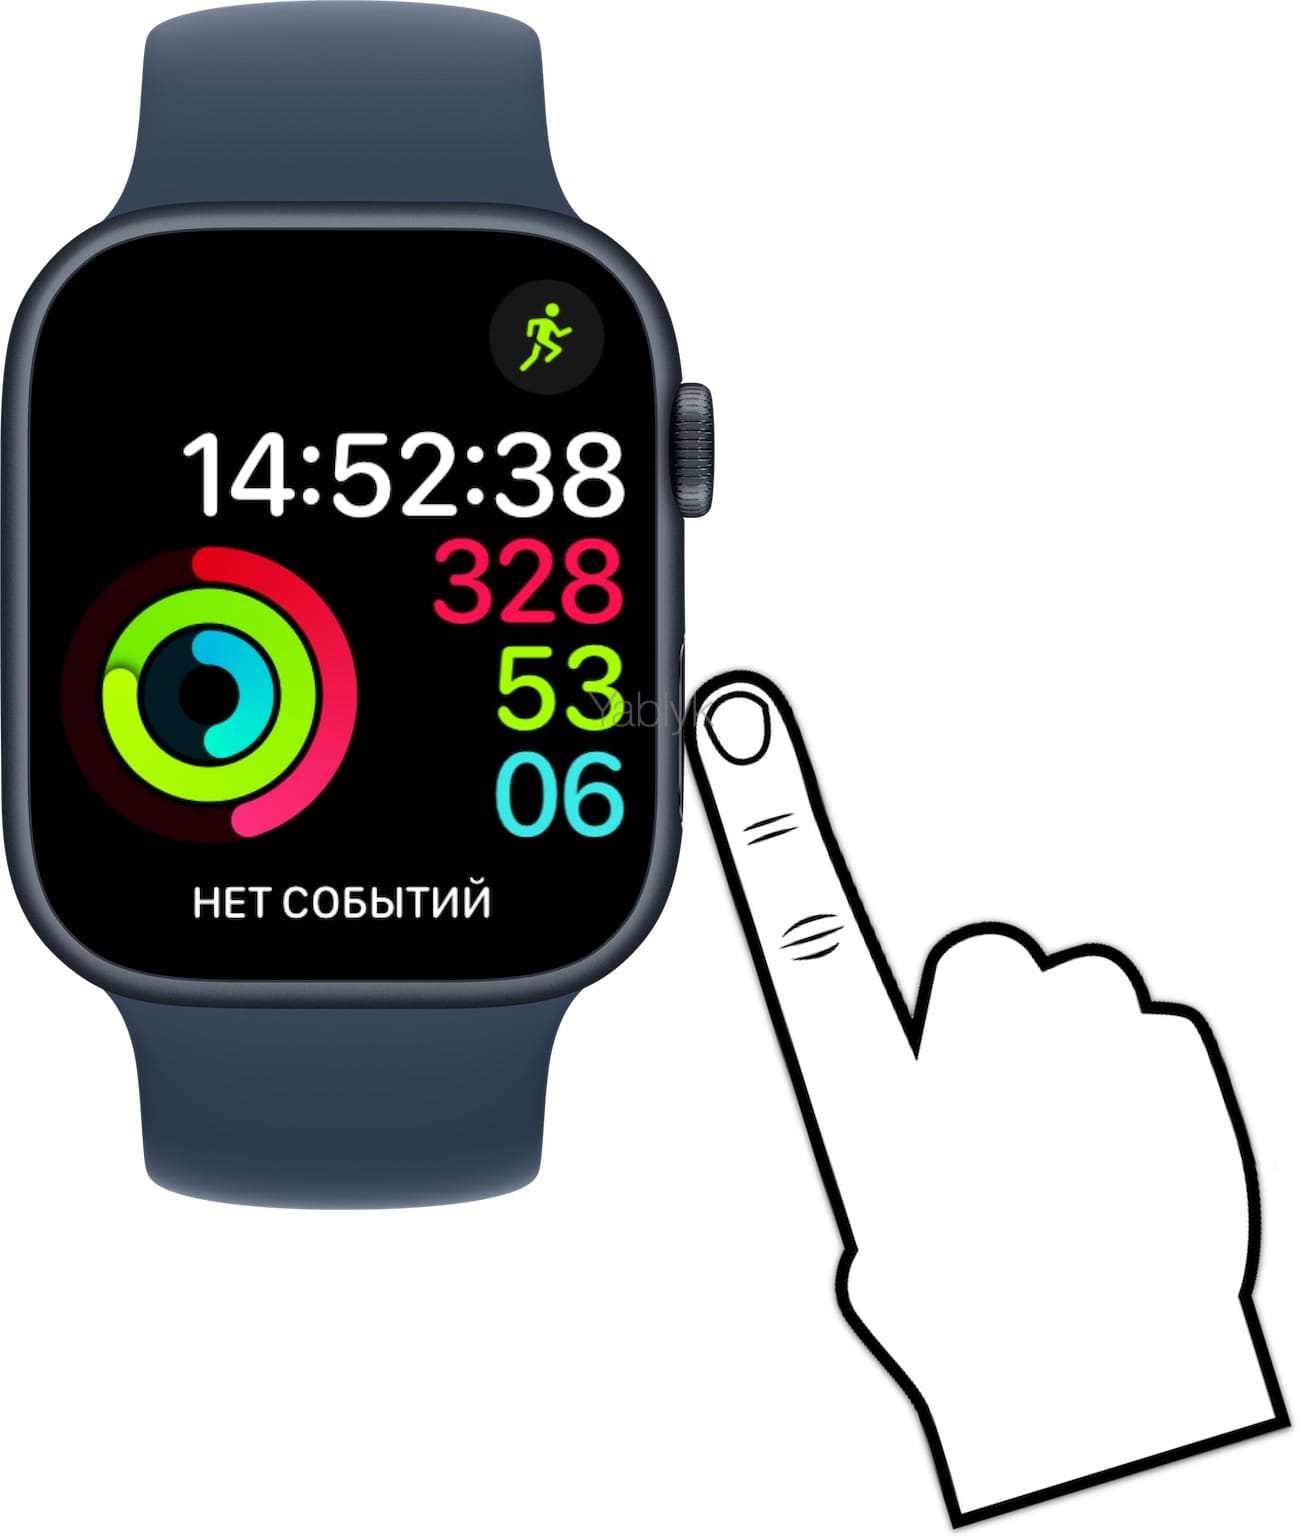 Как открыть «Пункт управления» в Apple Watch?